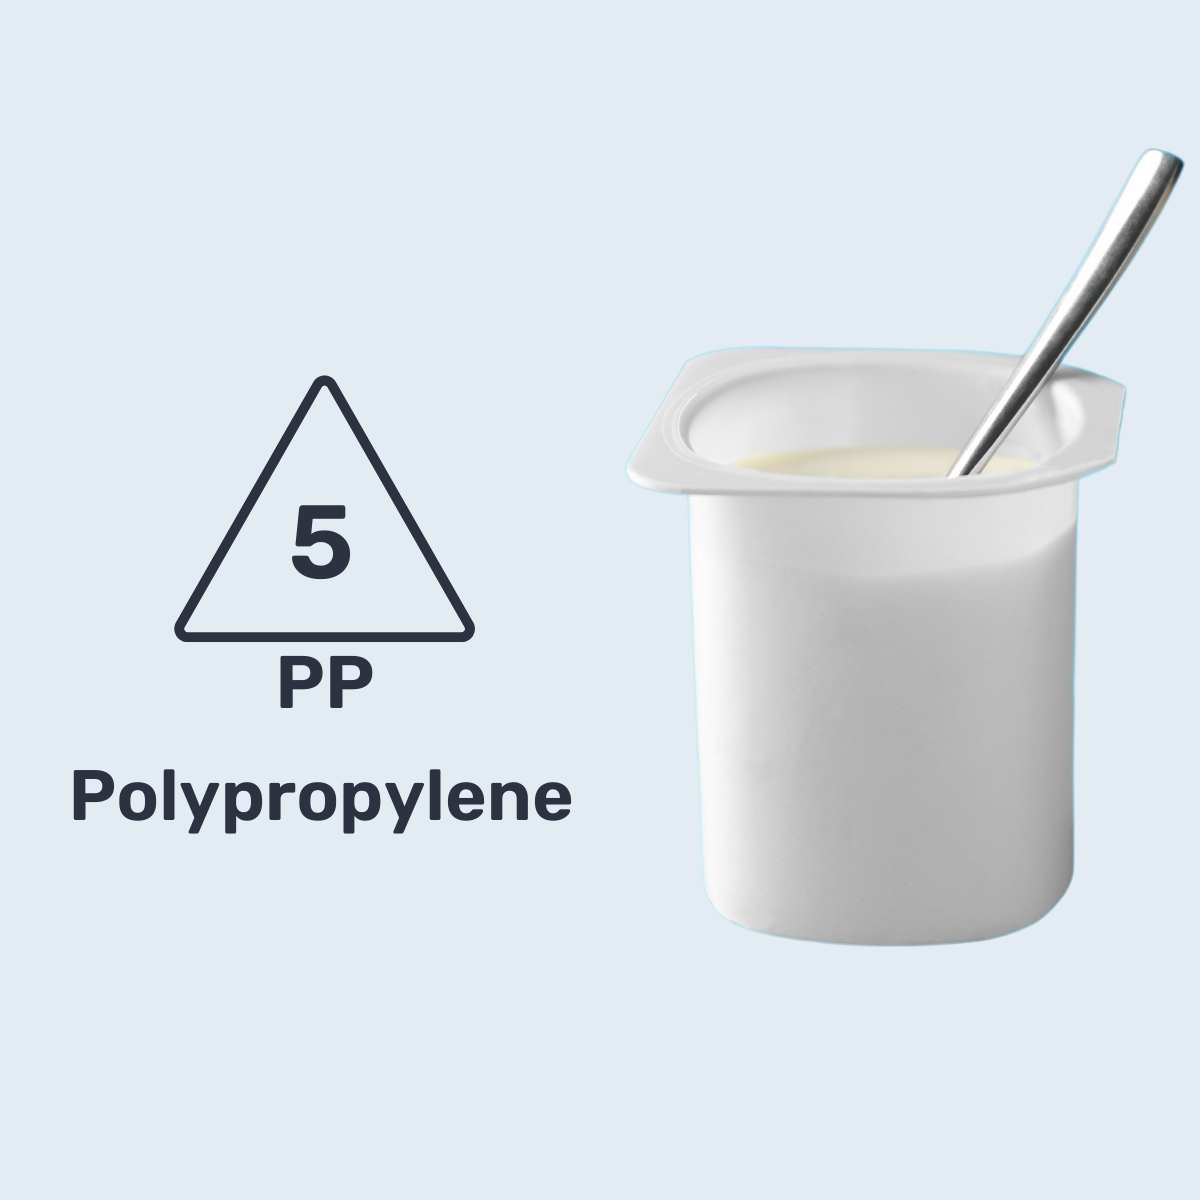 #5 PP - Packaging Polymer Series